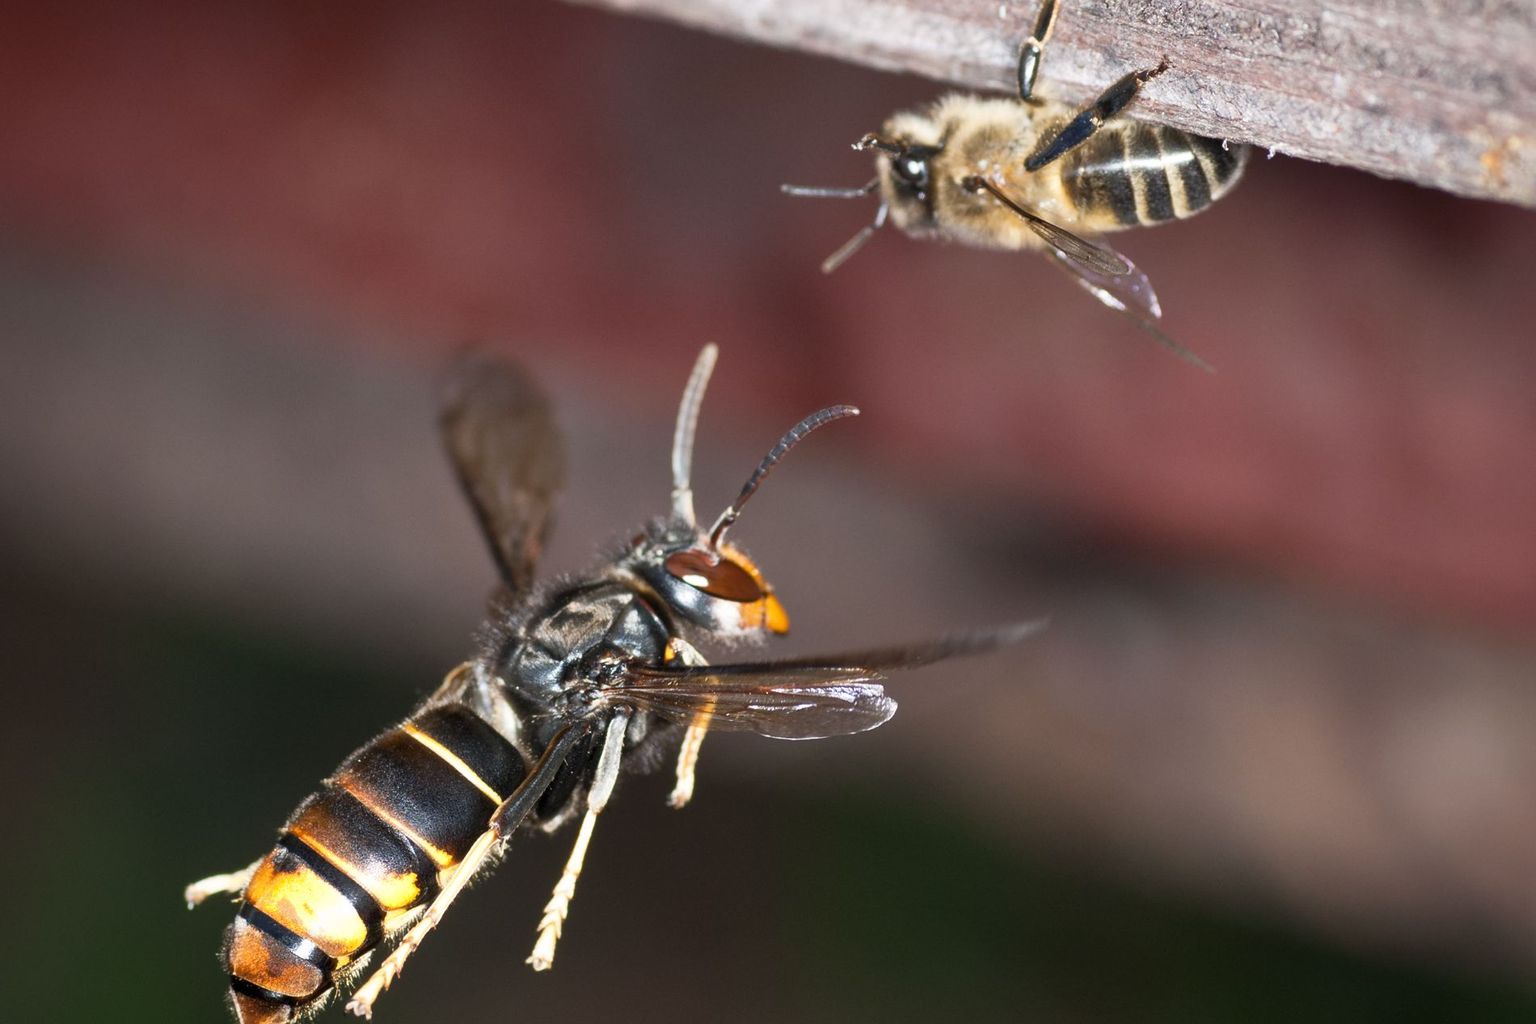 Asian hornet attacks honeybee